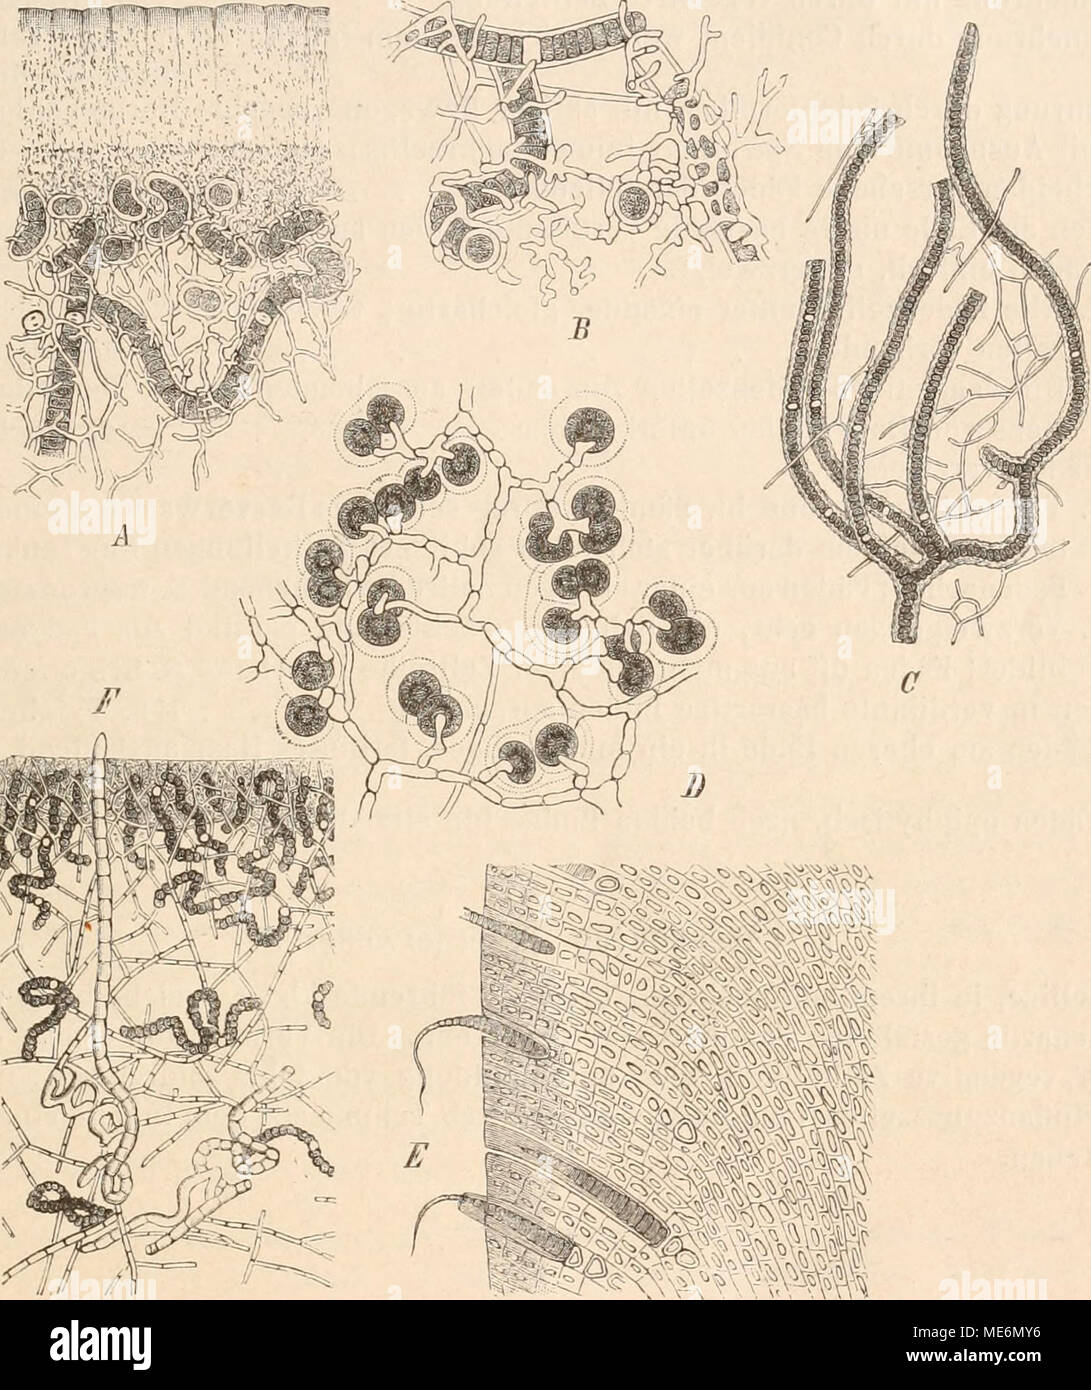 . Die NatÃ¼rlichen Pflanzenfamilien nebst ihren Gattungen und wichtigeren Arten, insbesondere den Nutzpflanzen, unter Mitwirkung zahlreicher hervorragender Fachgelehrten begrÃ¼ndet . Fig. 48. Schizophyceae als Flechten-Gonidien. A, B Stereocaulon ramulosum mit Scytonema-doniiiea (330(1). â C Dictyonema seric.eum mit Scytonema-Goniiien (80)1). â D Synalissa symphorea mit Glococapsa-Gonidien (475|1). â E Lichma sp. mit Rivularia-tiomÃ¼Lien (300|1). â F Collema microphyllum mit Nostoc-Goniiien (500/1). (AâD nach Bornet, E nach Schwendener, F nach Stahl). Amphithrix, sowie die Untergattung Homoeot Stock Photo